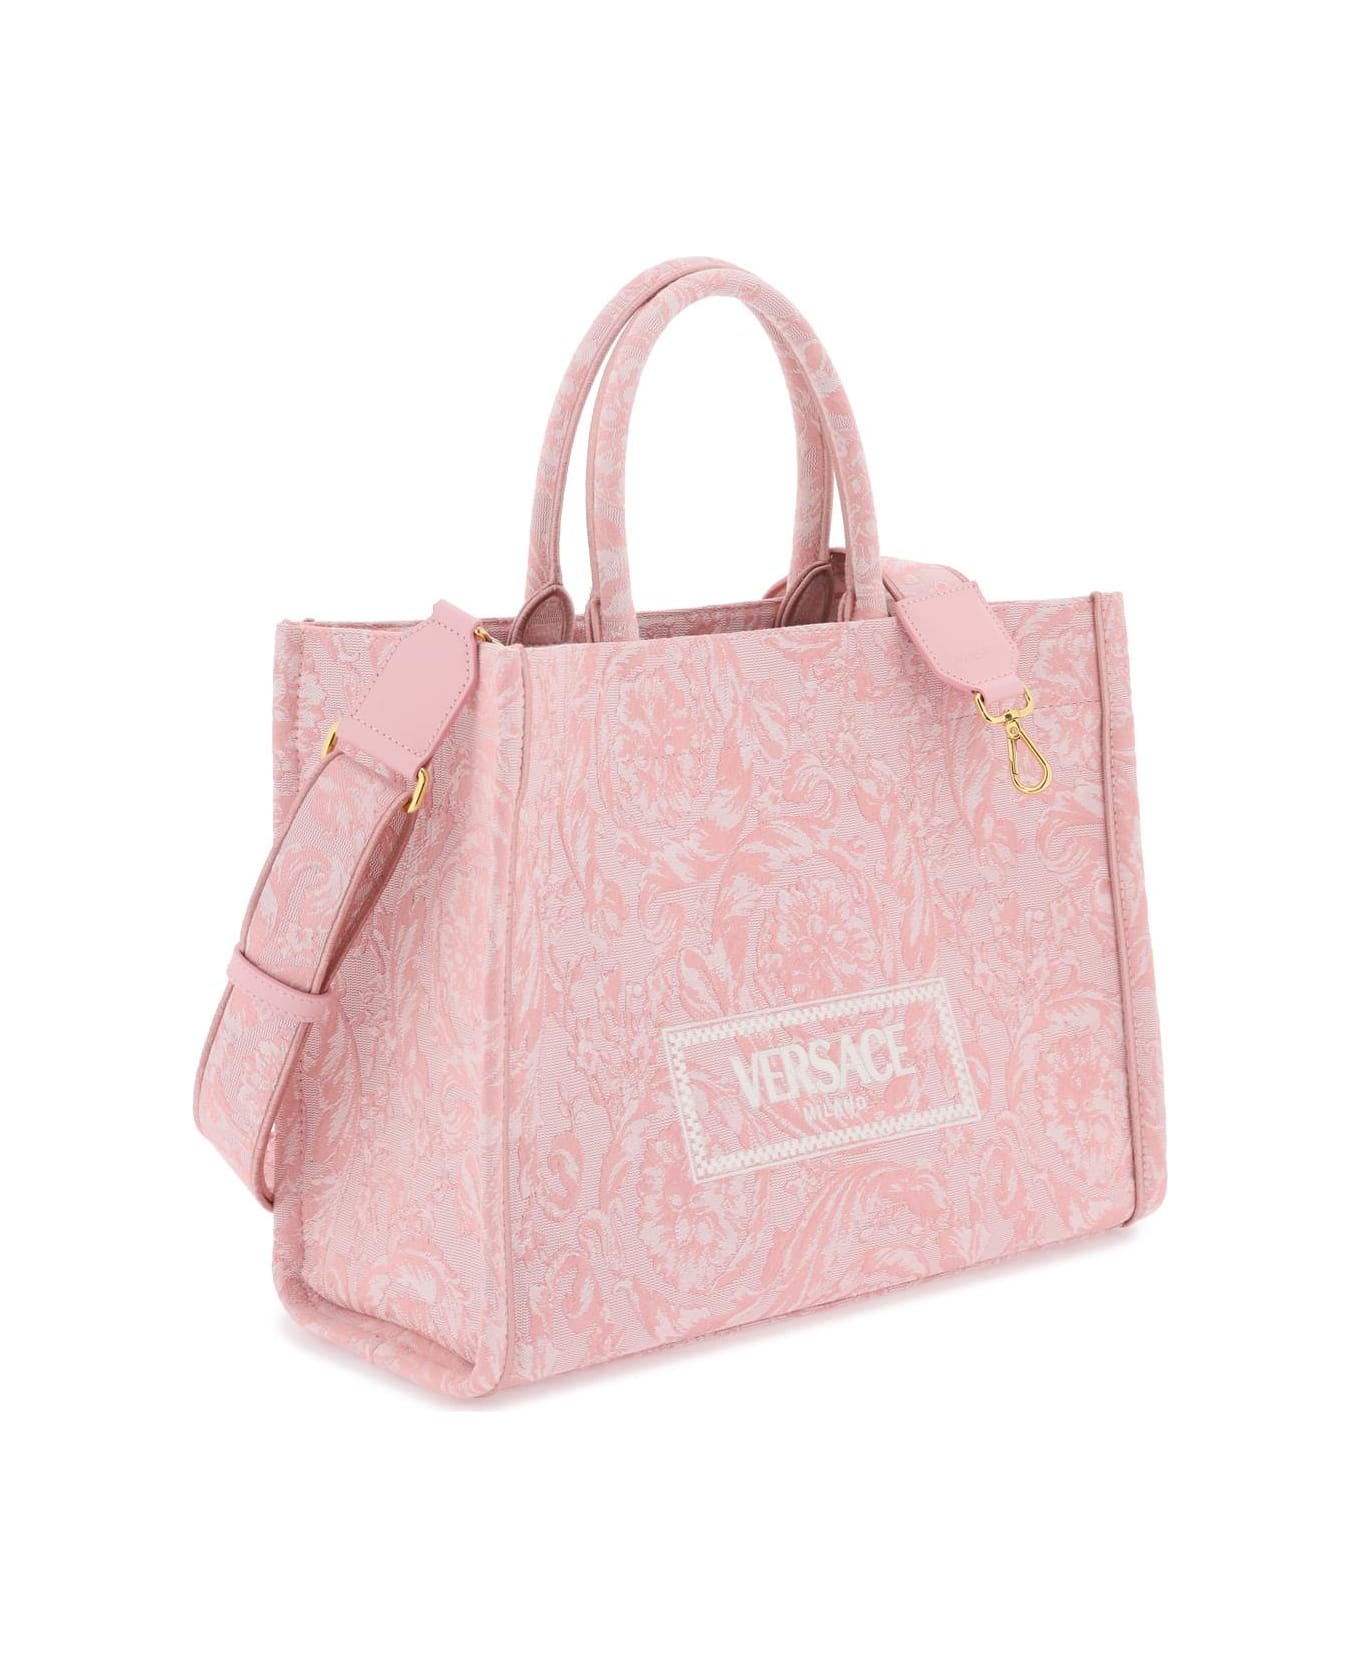 Versace Athena Handbag - Pale Pink-english Rose-ve